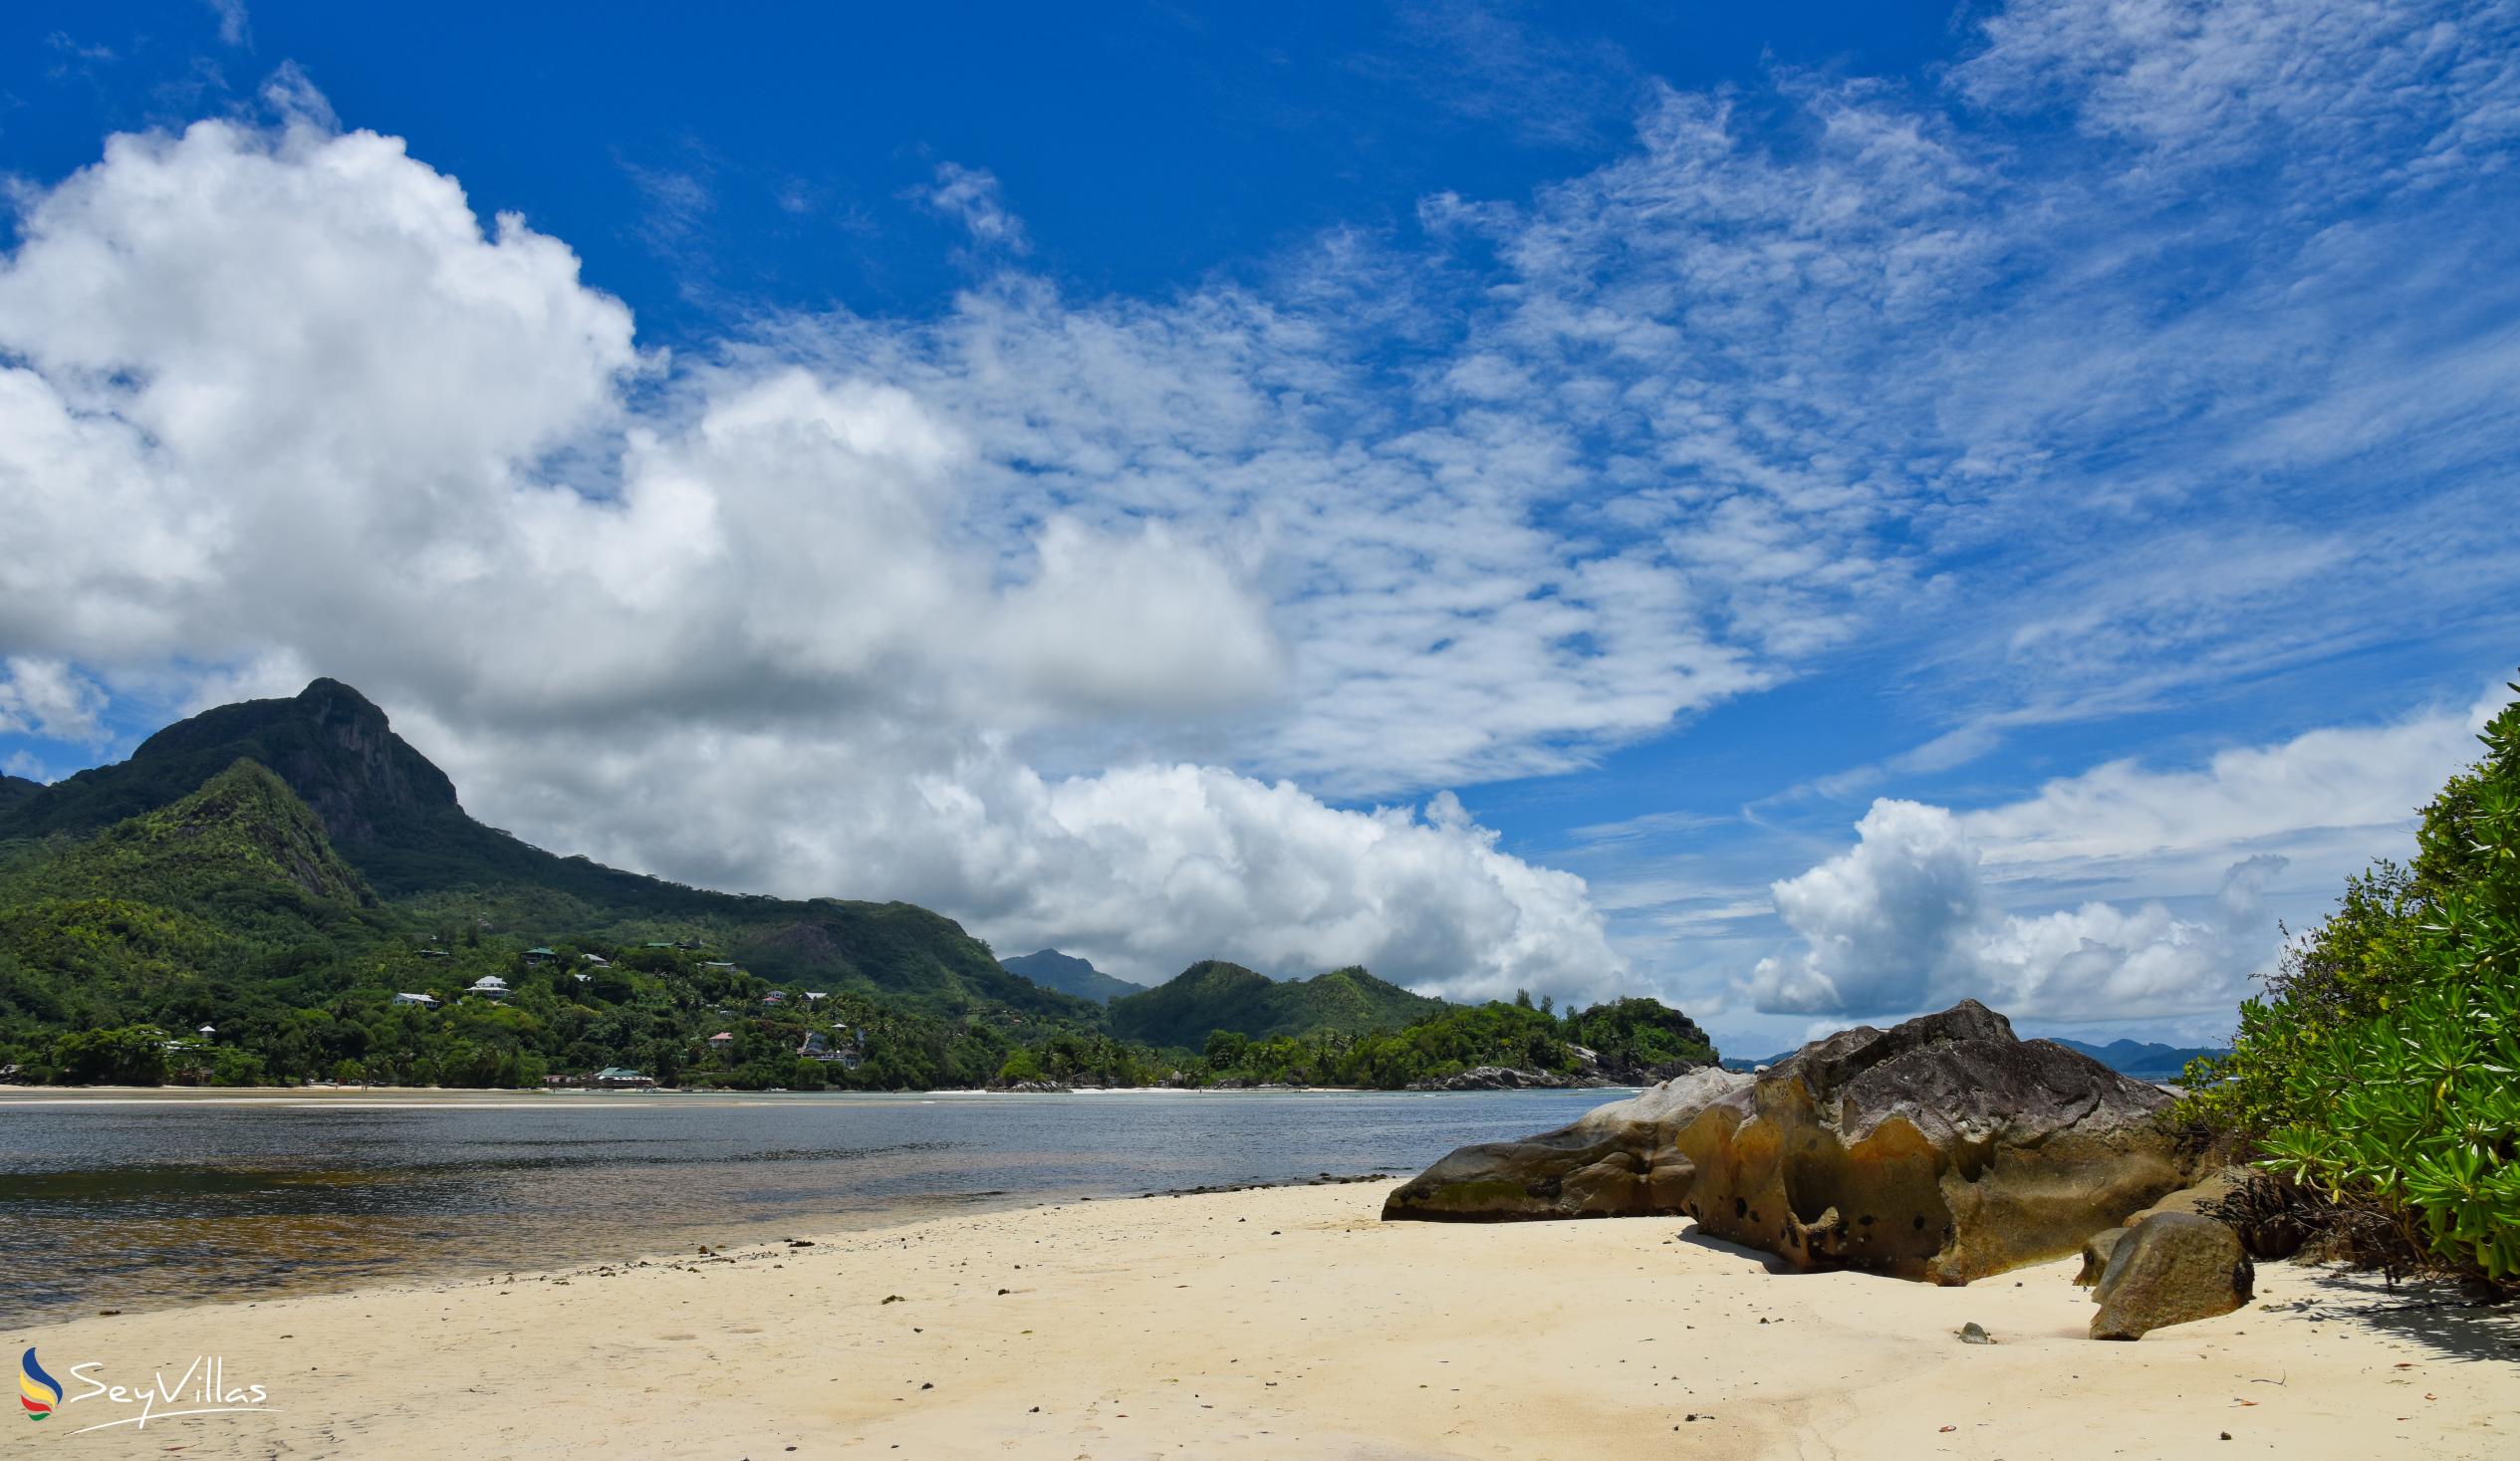 Photo 13: Port Launay South Beach - Mahé (Seychelles)